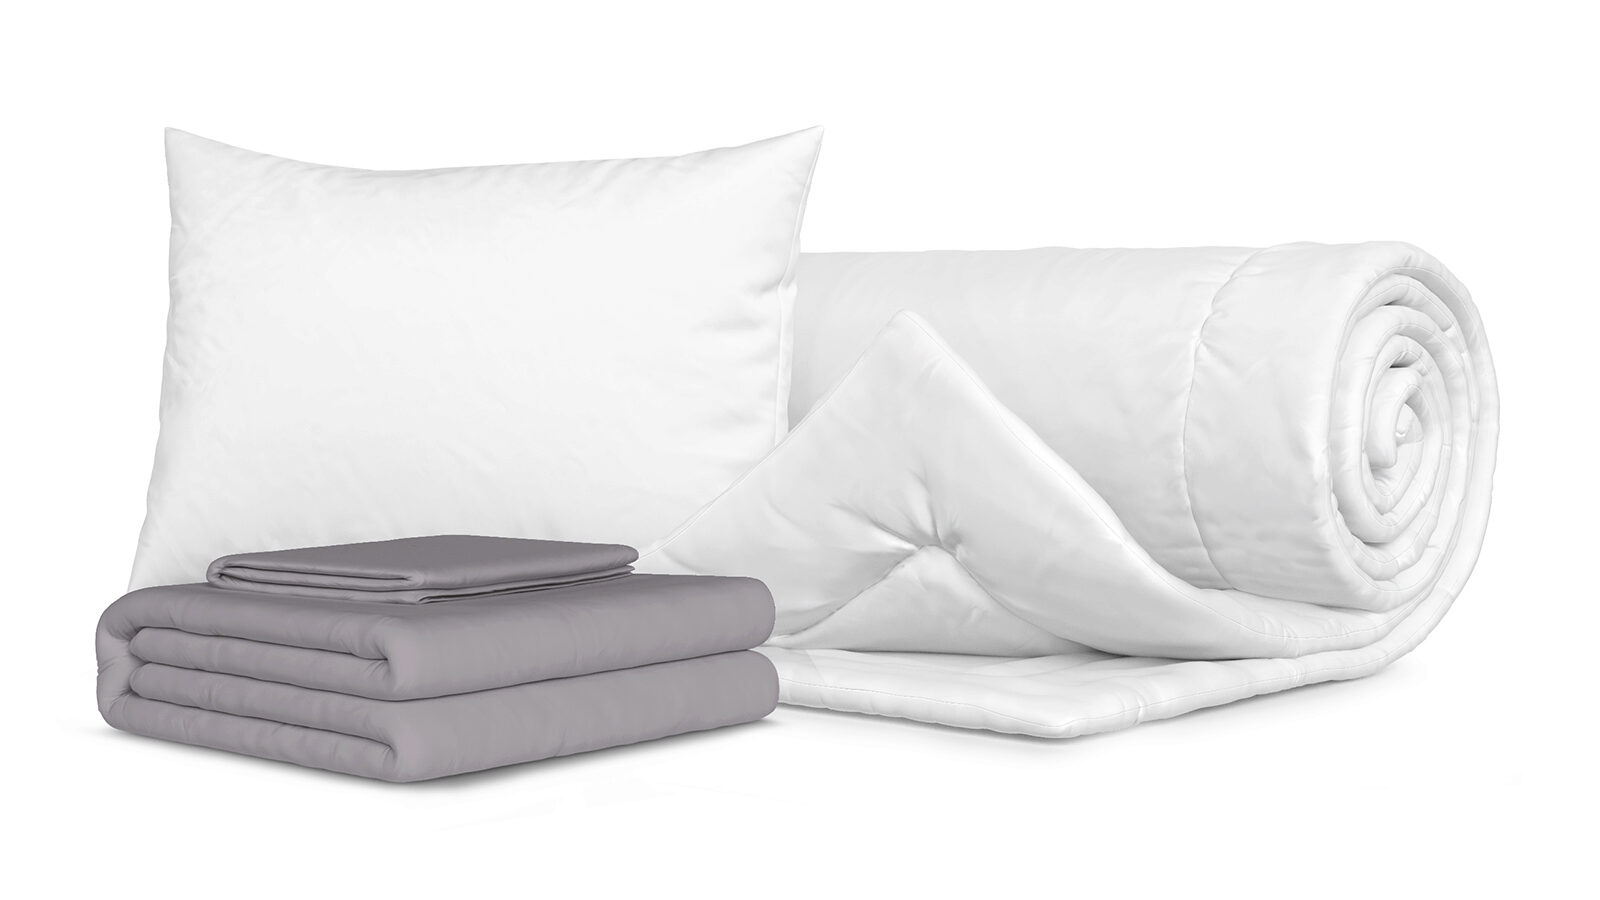 Комплект Одеяло Beat + Подушка Sky + Комплект постельного белья Comfort Cotton, цвет: Светло-серый комплект одеяло beat подушка sky